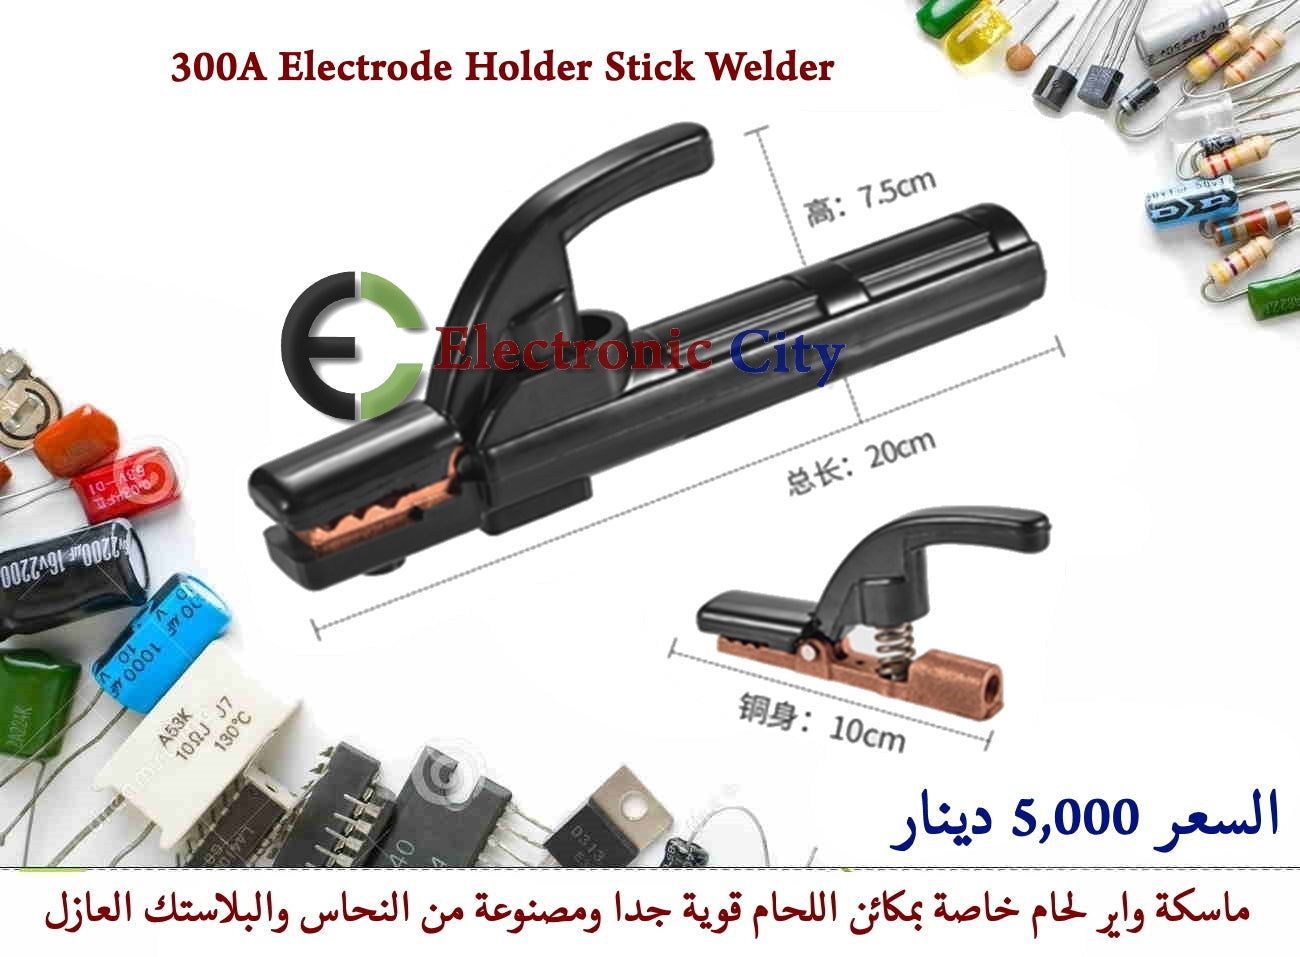 300A Electrode Holder Stick Welder